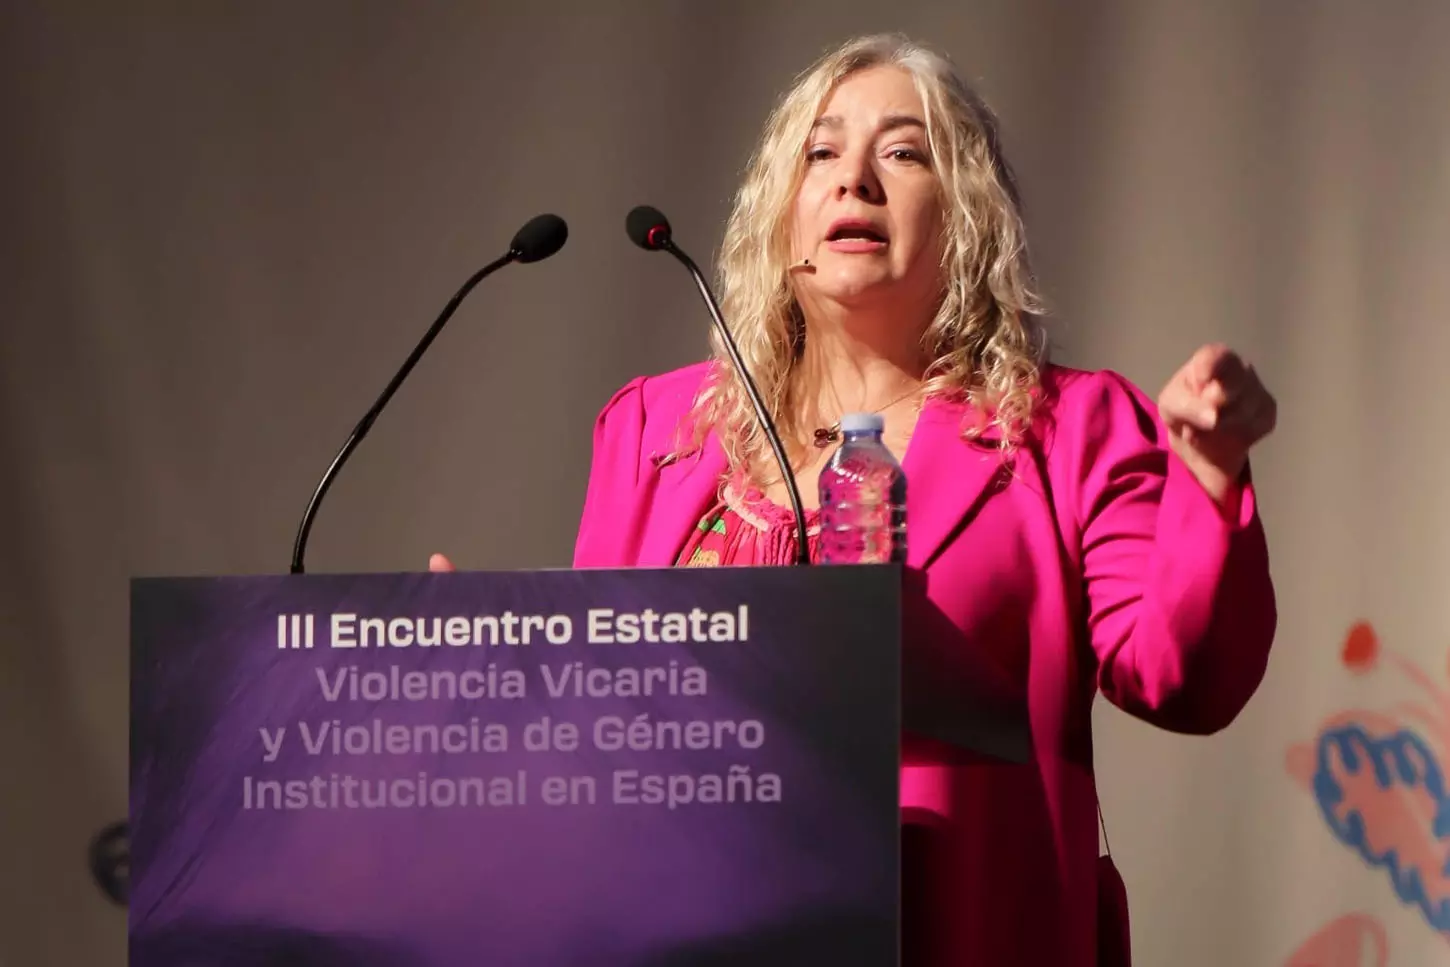 La jueza Isabel Giménez, durante su intervención en el reciente III Encuentro Estatal sobre Violencia Vicaria y Violencia de Género Institucional, en Barcelona— Fátima Vizuete Montero